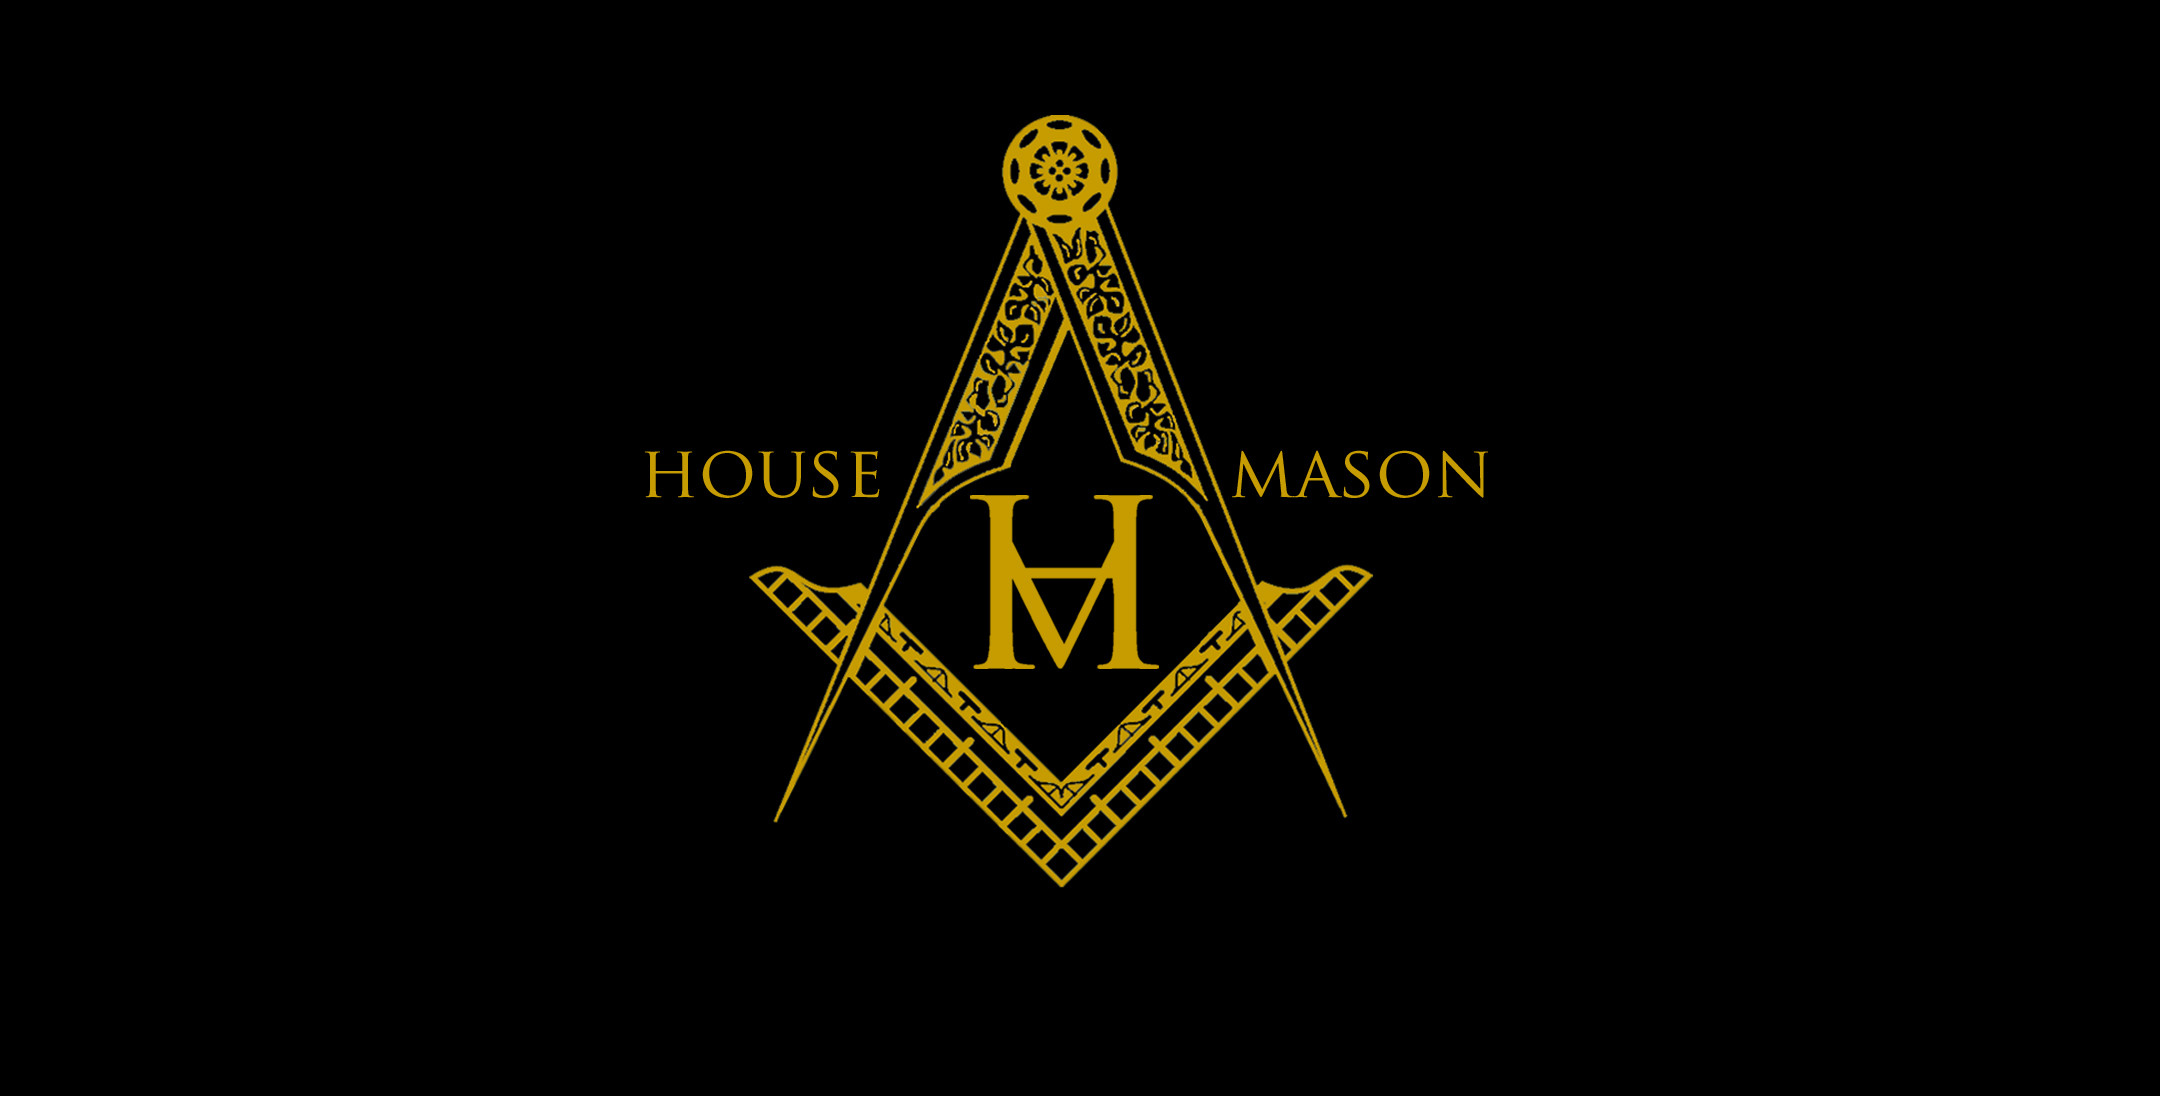 Mason Emblems and Logos Wallpaper (49+